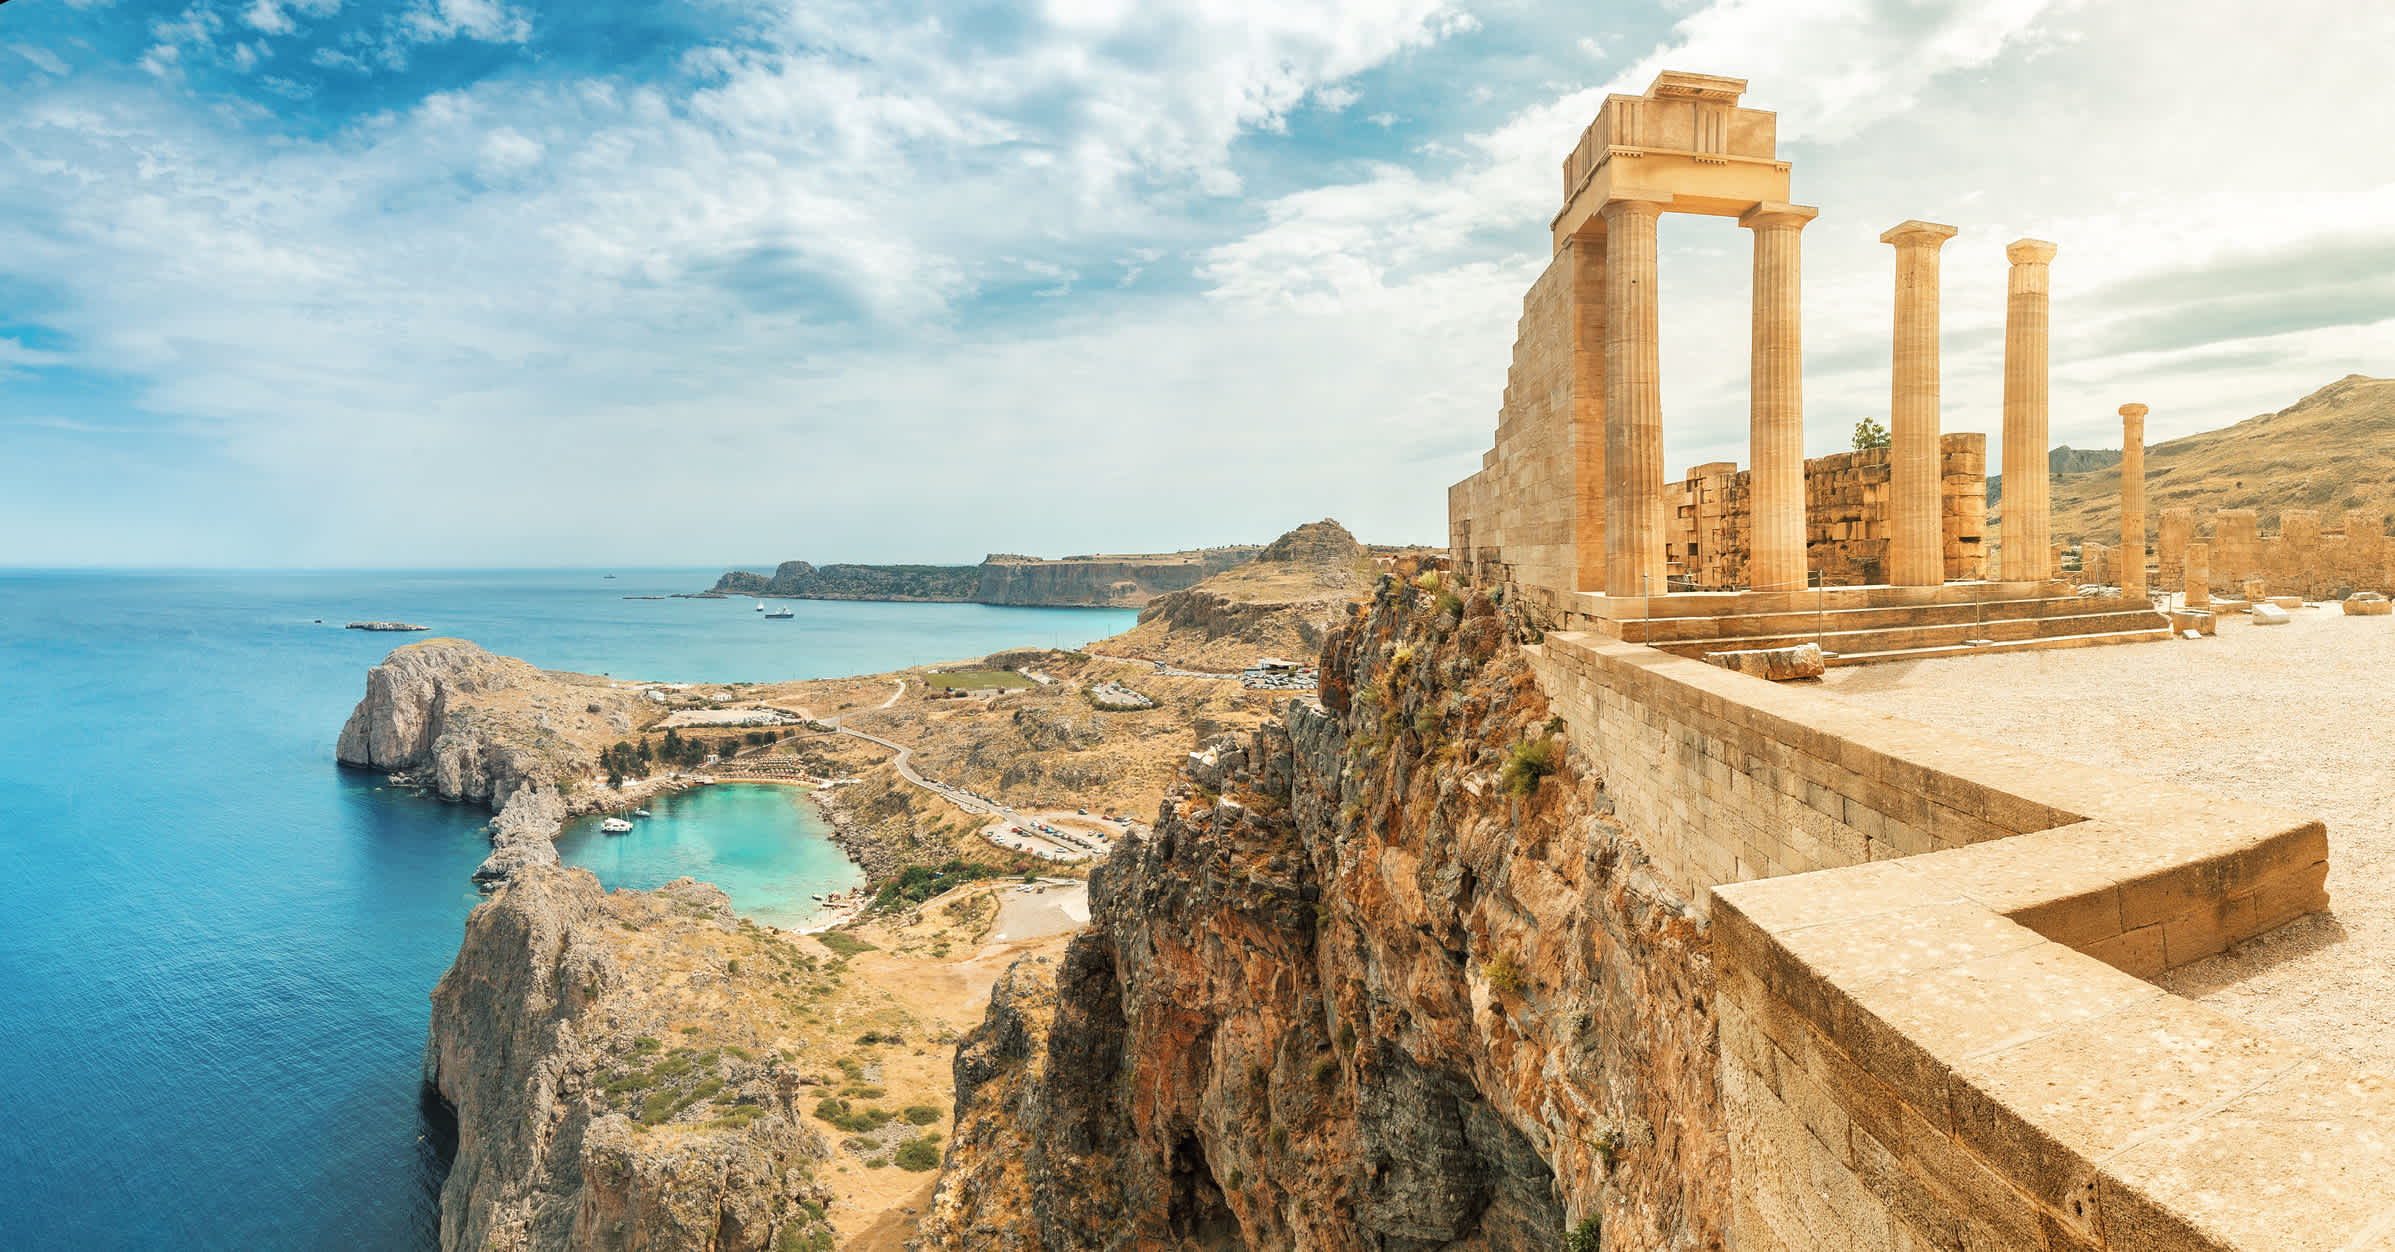 Berühmte Touristenattraktion - Akropolis von Lindos. Antike Architektur in Griechenland. Reiseziele der Insel Rhodos